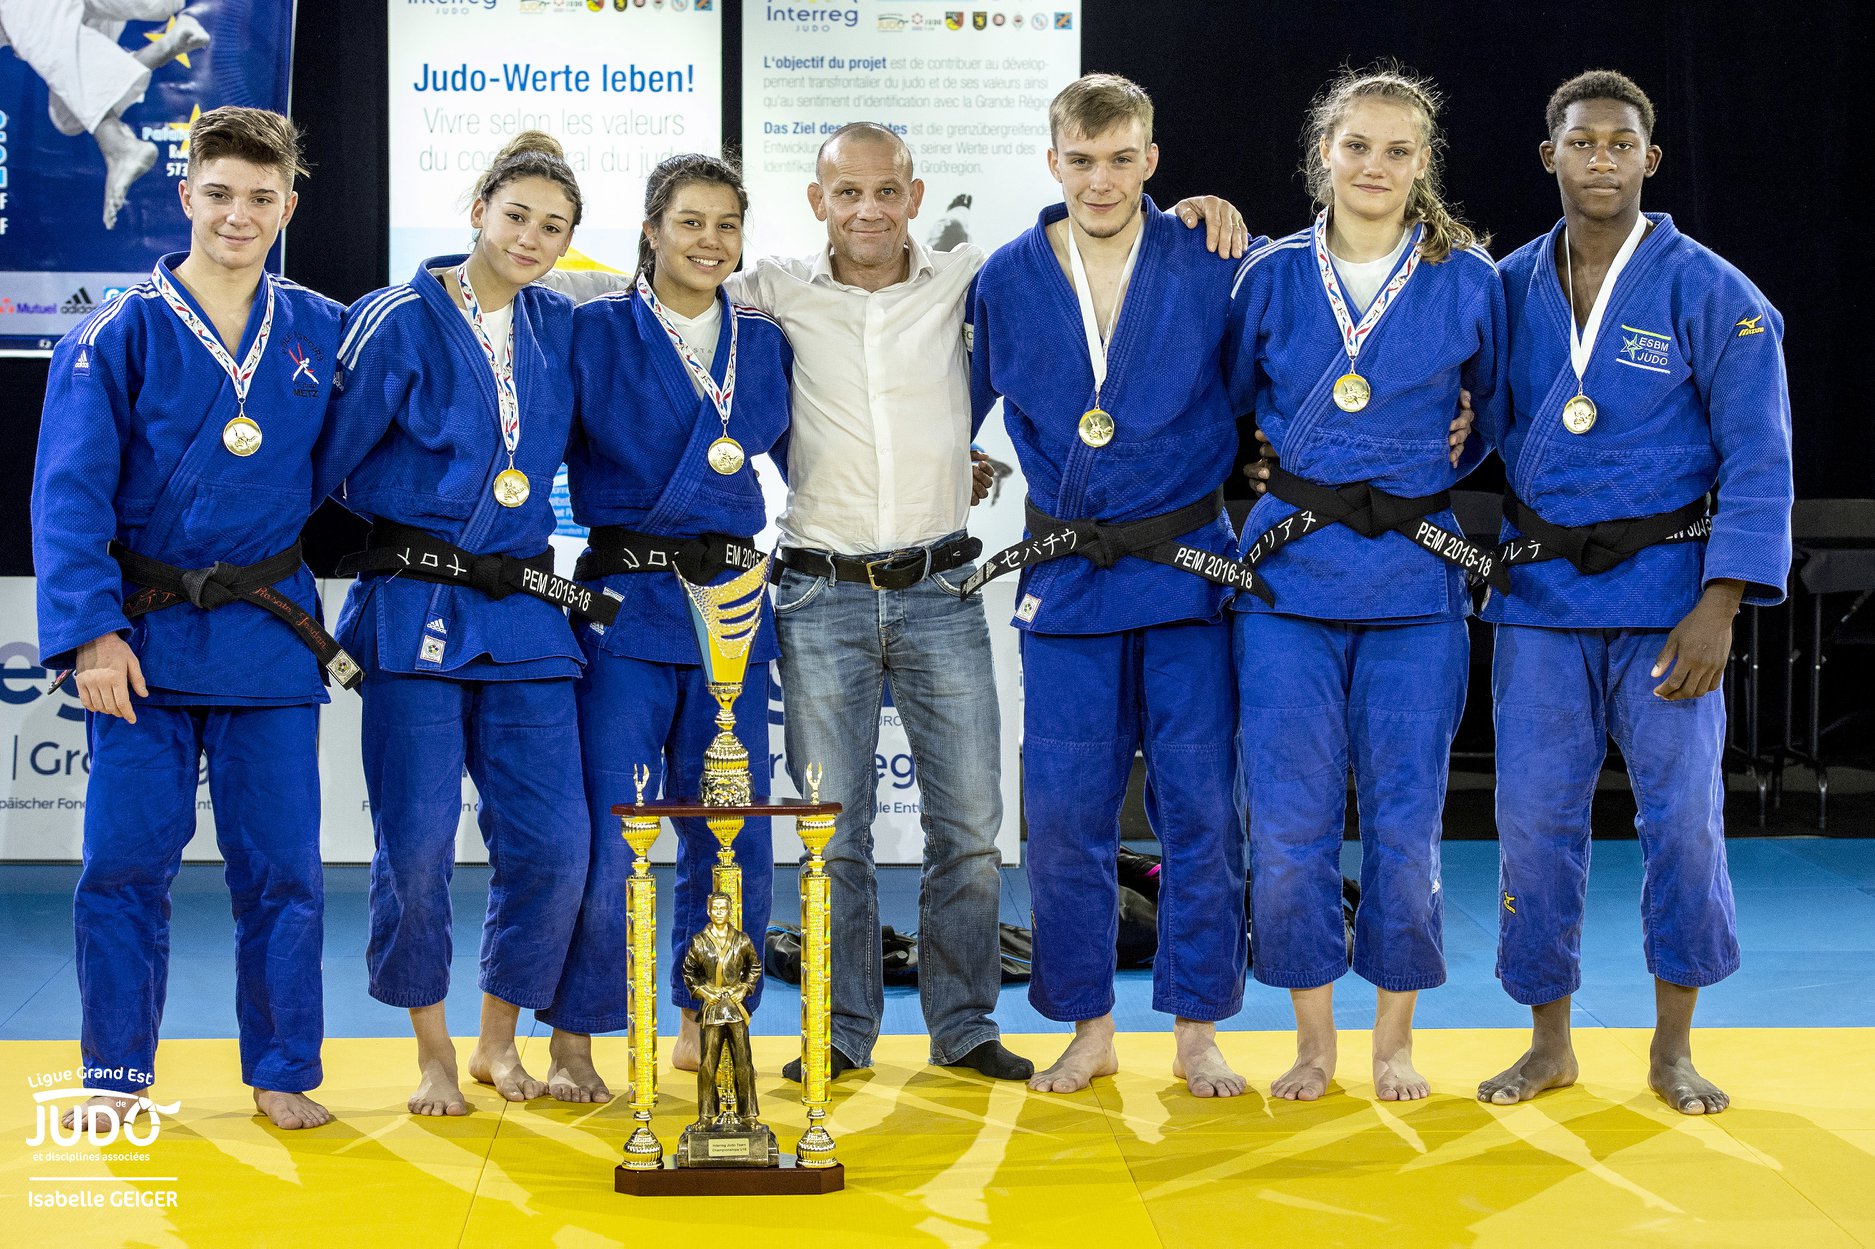 Cadet Interreg Judo Team Championships - Amnéville 20.10.2018